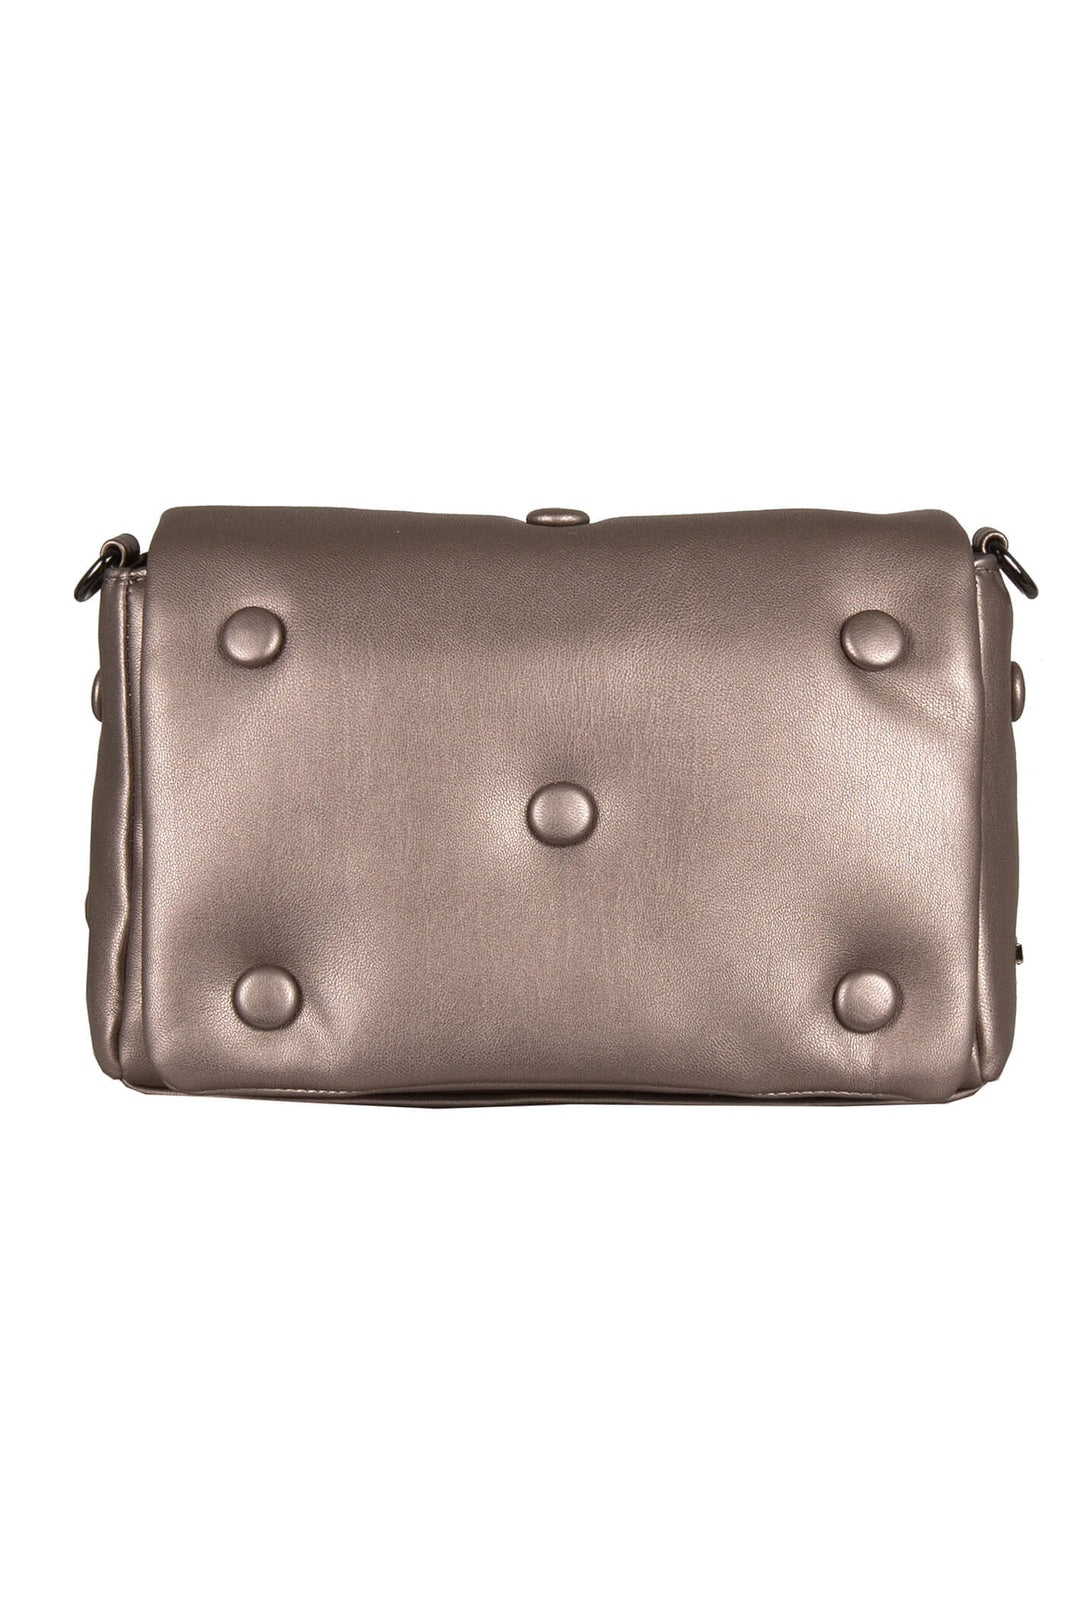 Bulaggi Angela 31249.26 Taupe Crossover Handbag - Shirley Allum Boutique